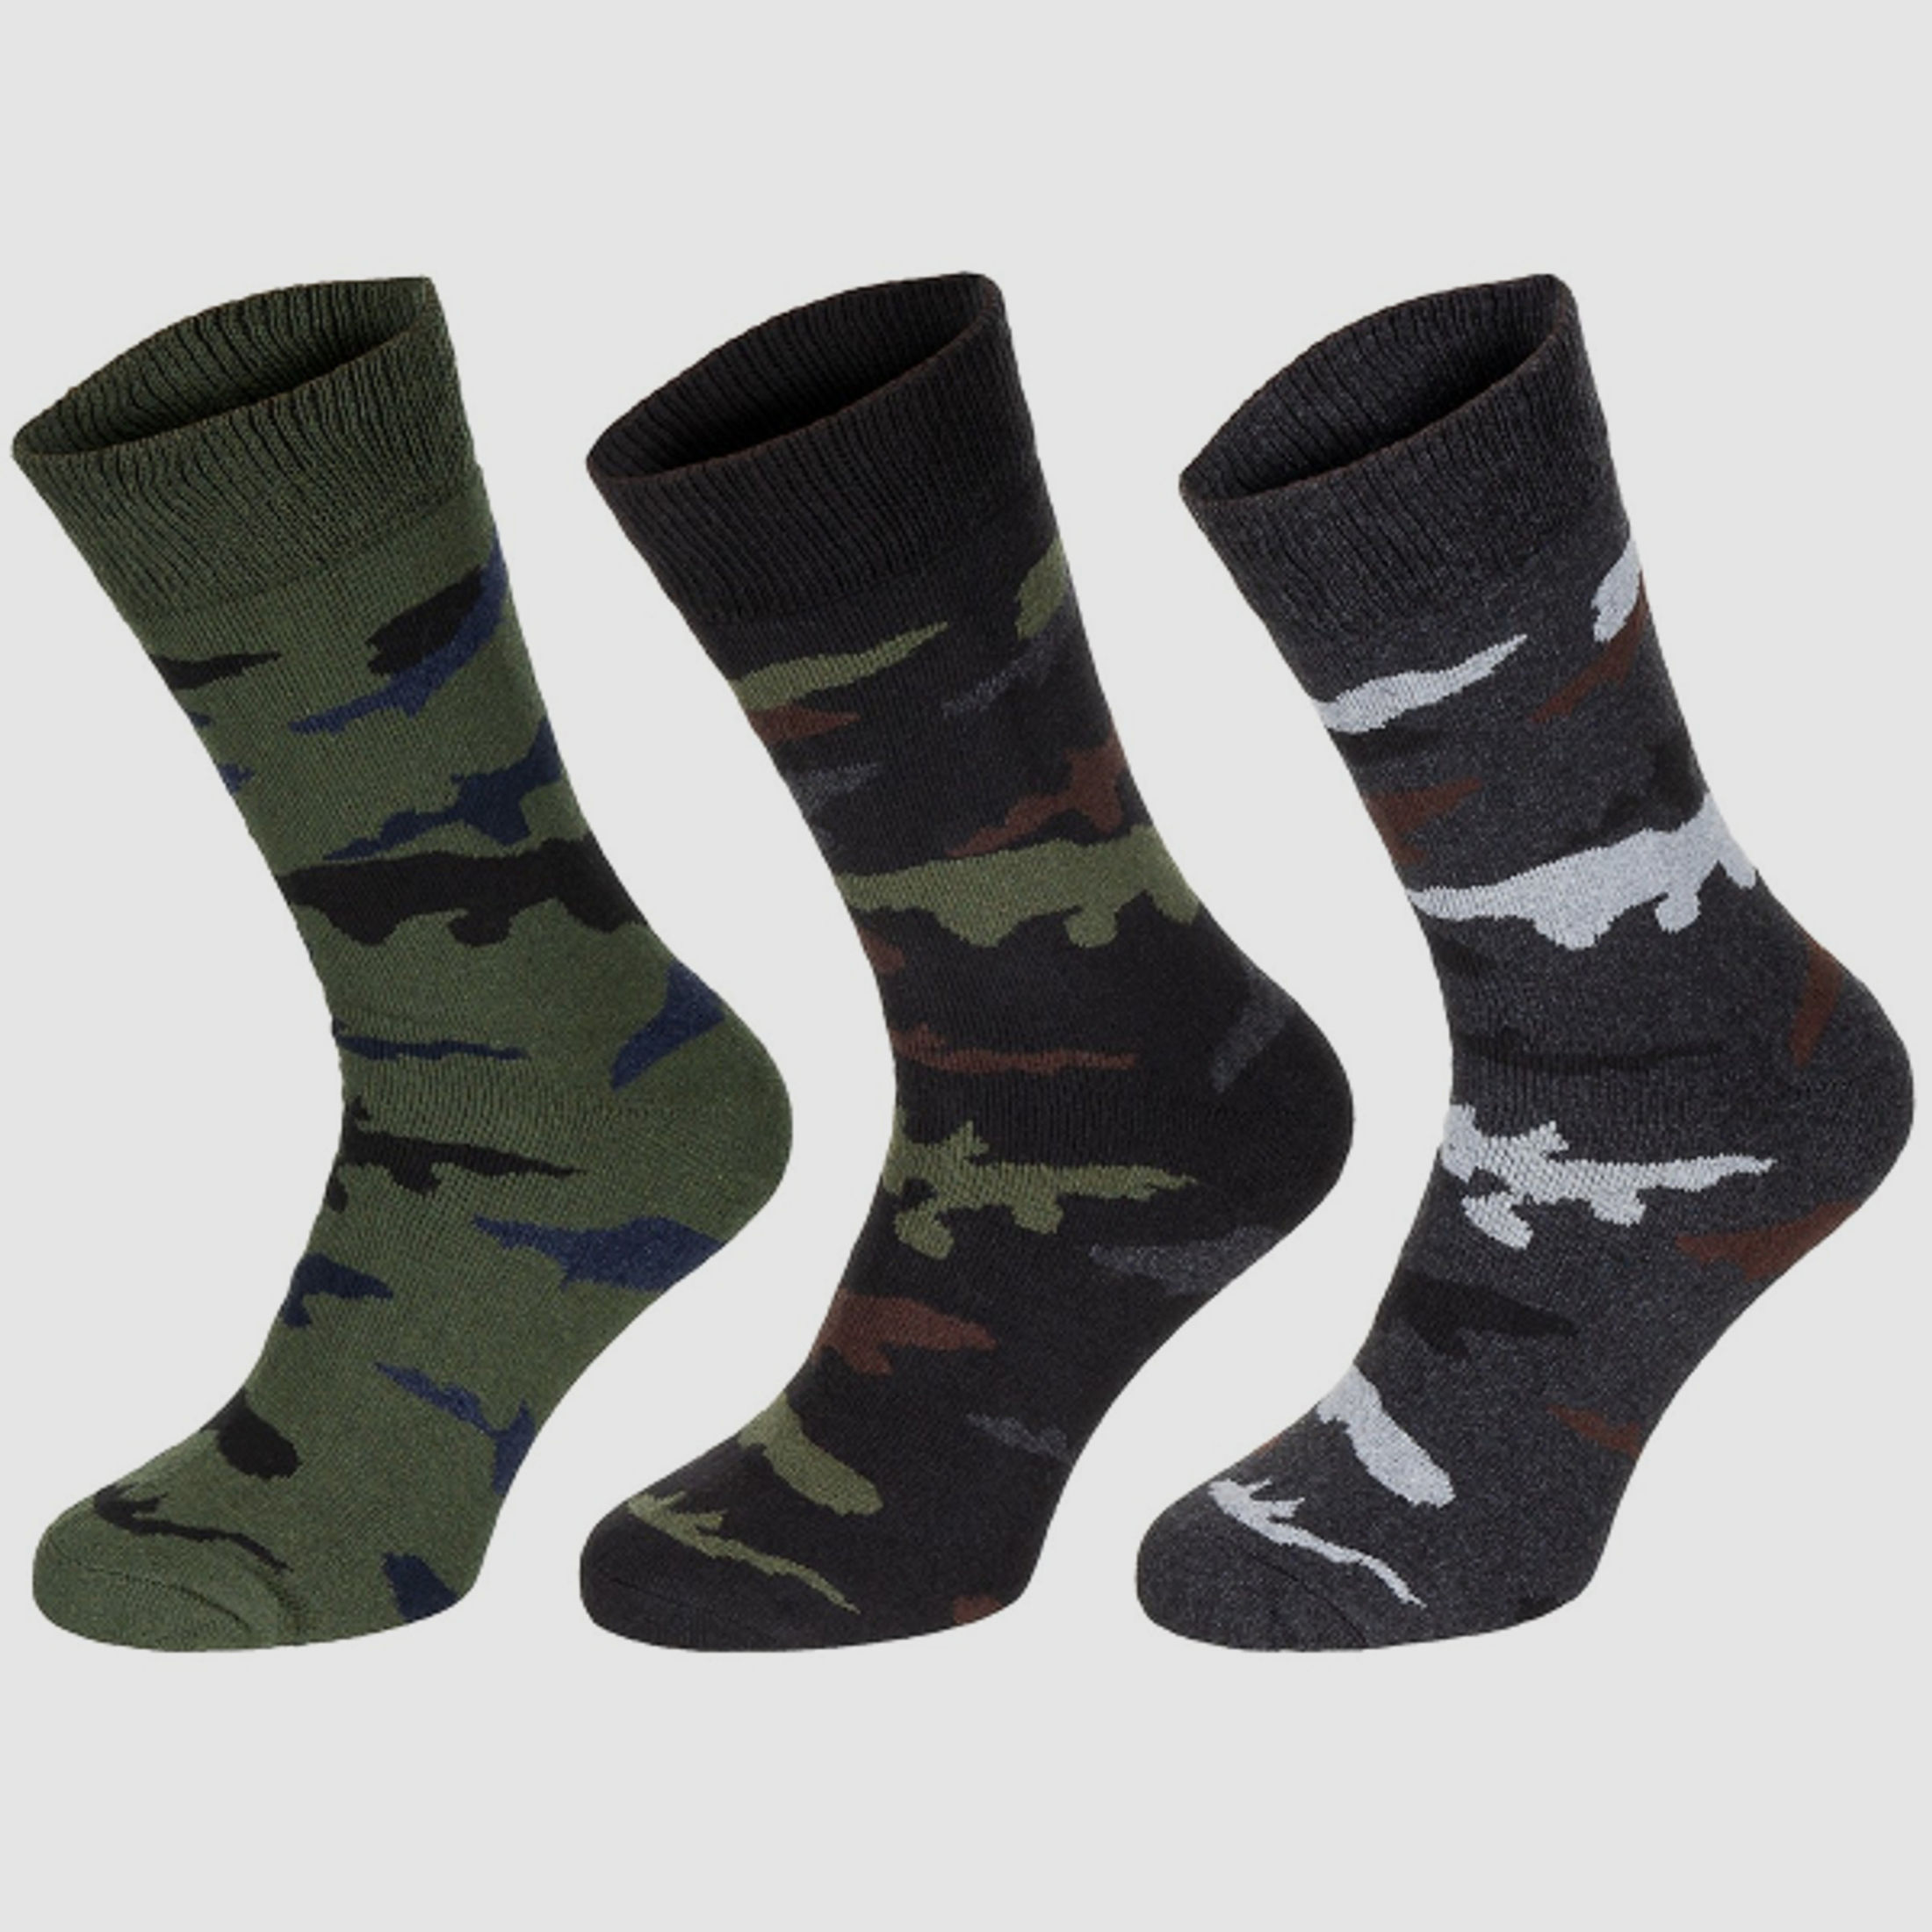 Socken / Strümpfe "Esercito" 3er Pack (39-42) Tarn / Camouflage halblang